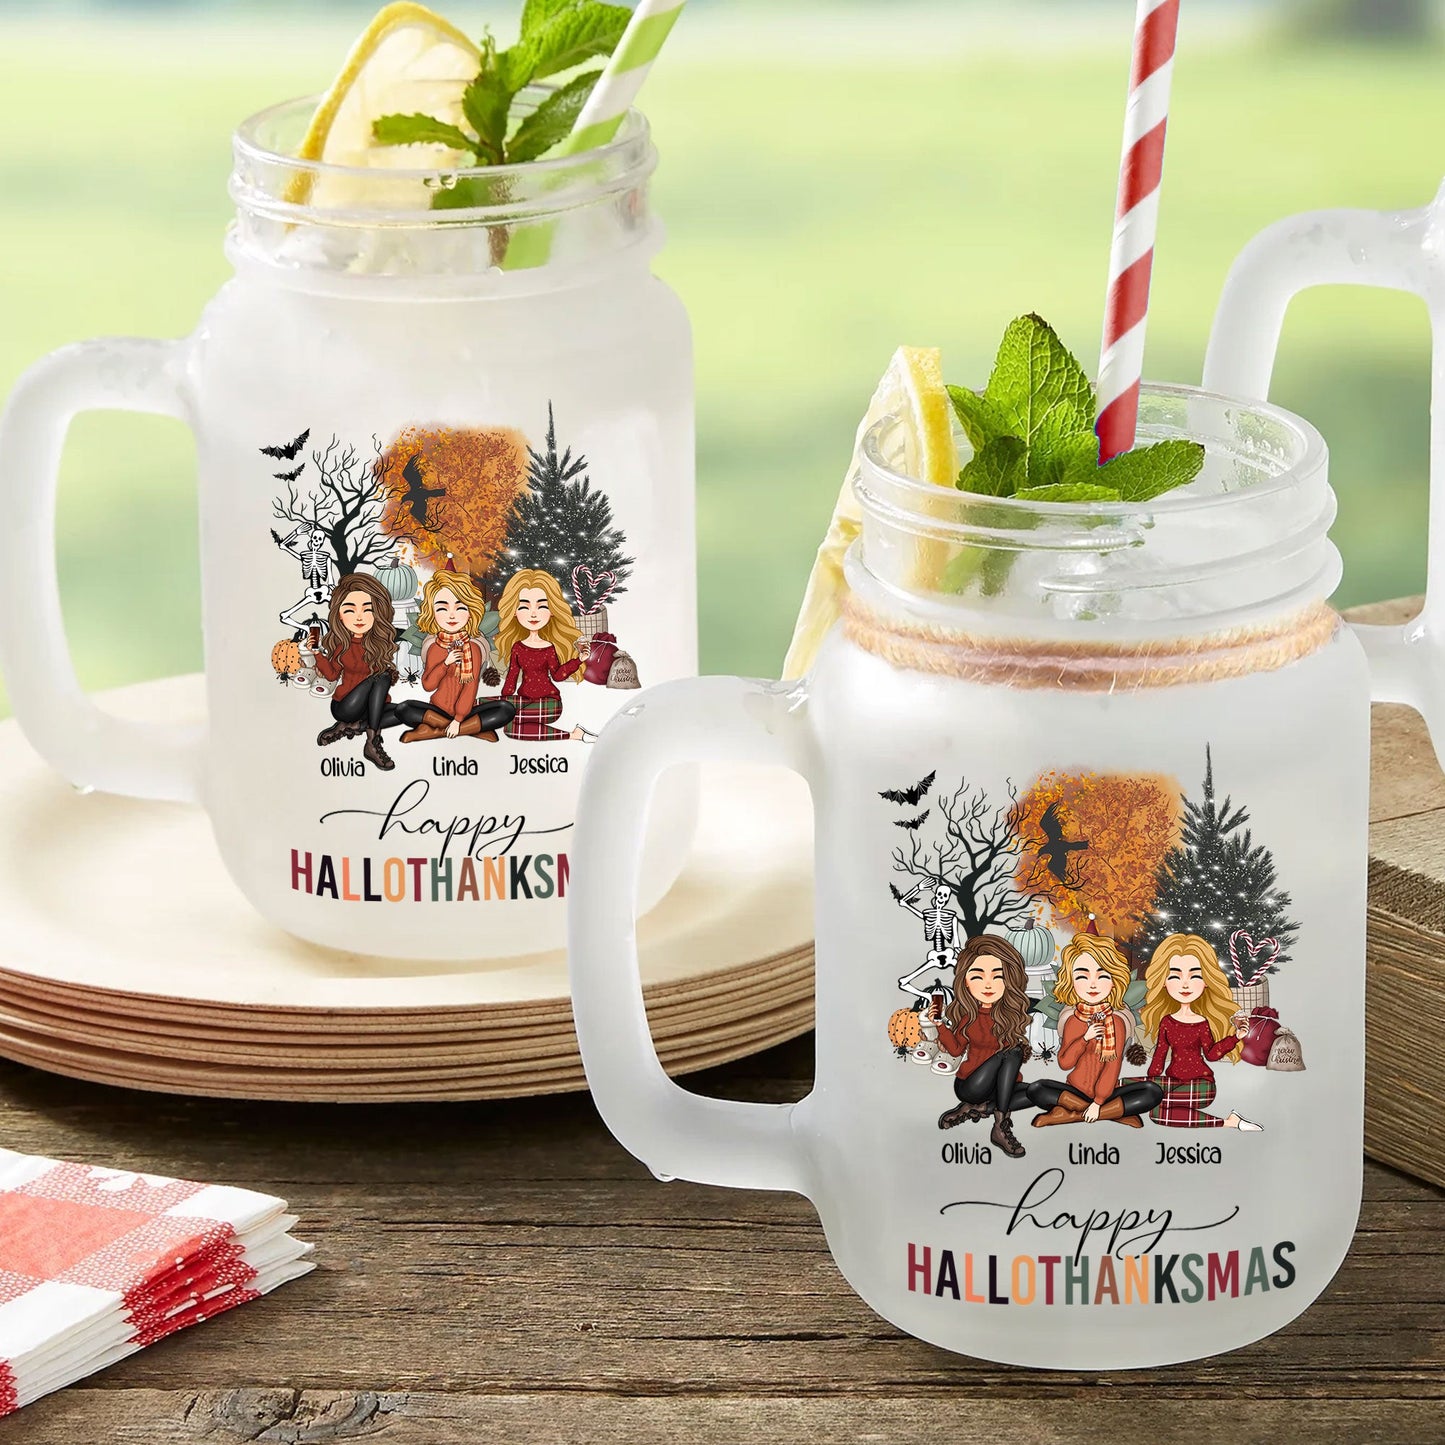 Happy Hallothanksmas Besties Friendship - Personalized Mason Jar Cup With Straw